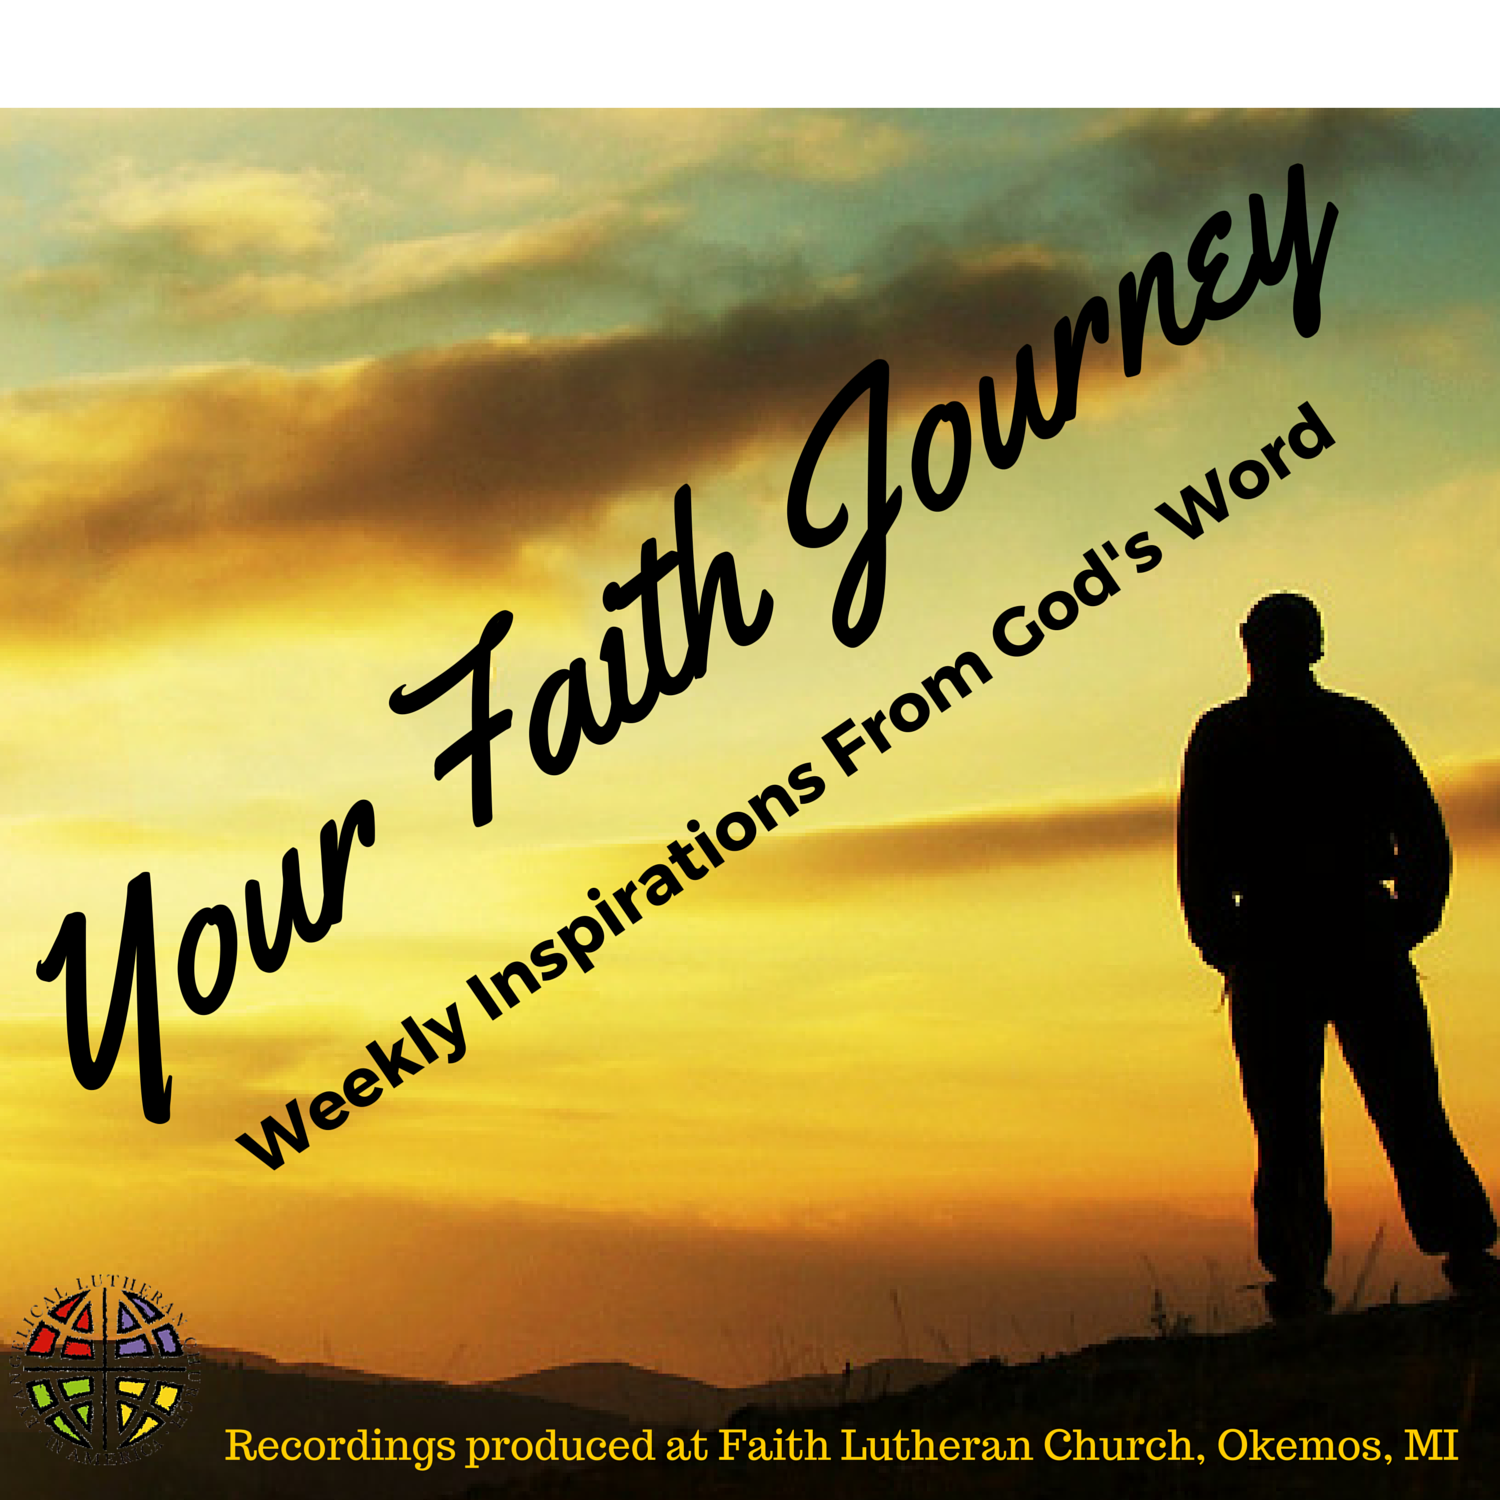 faith journey statement